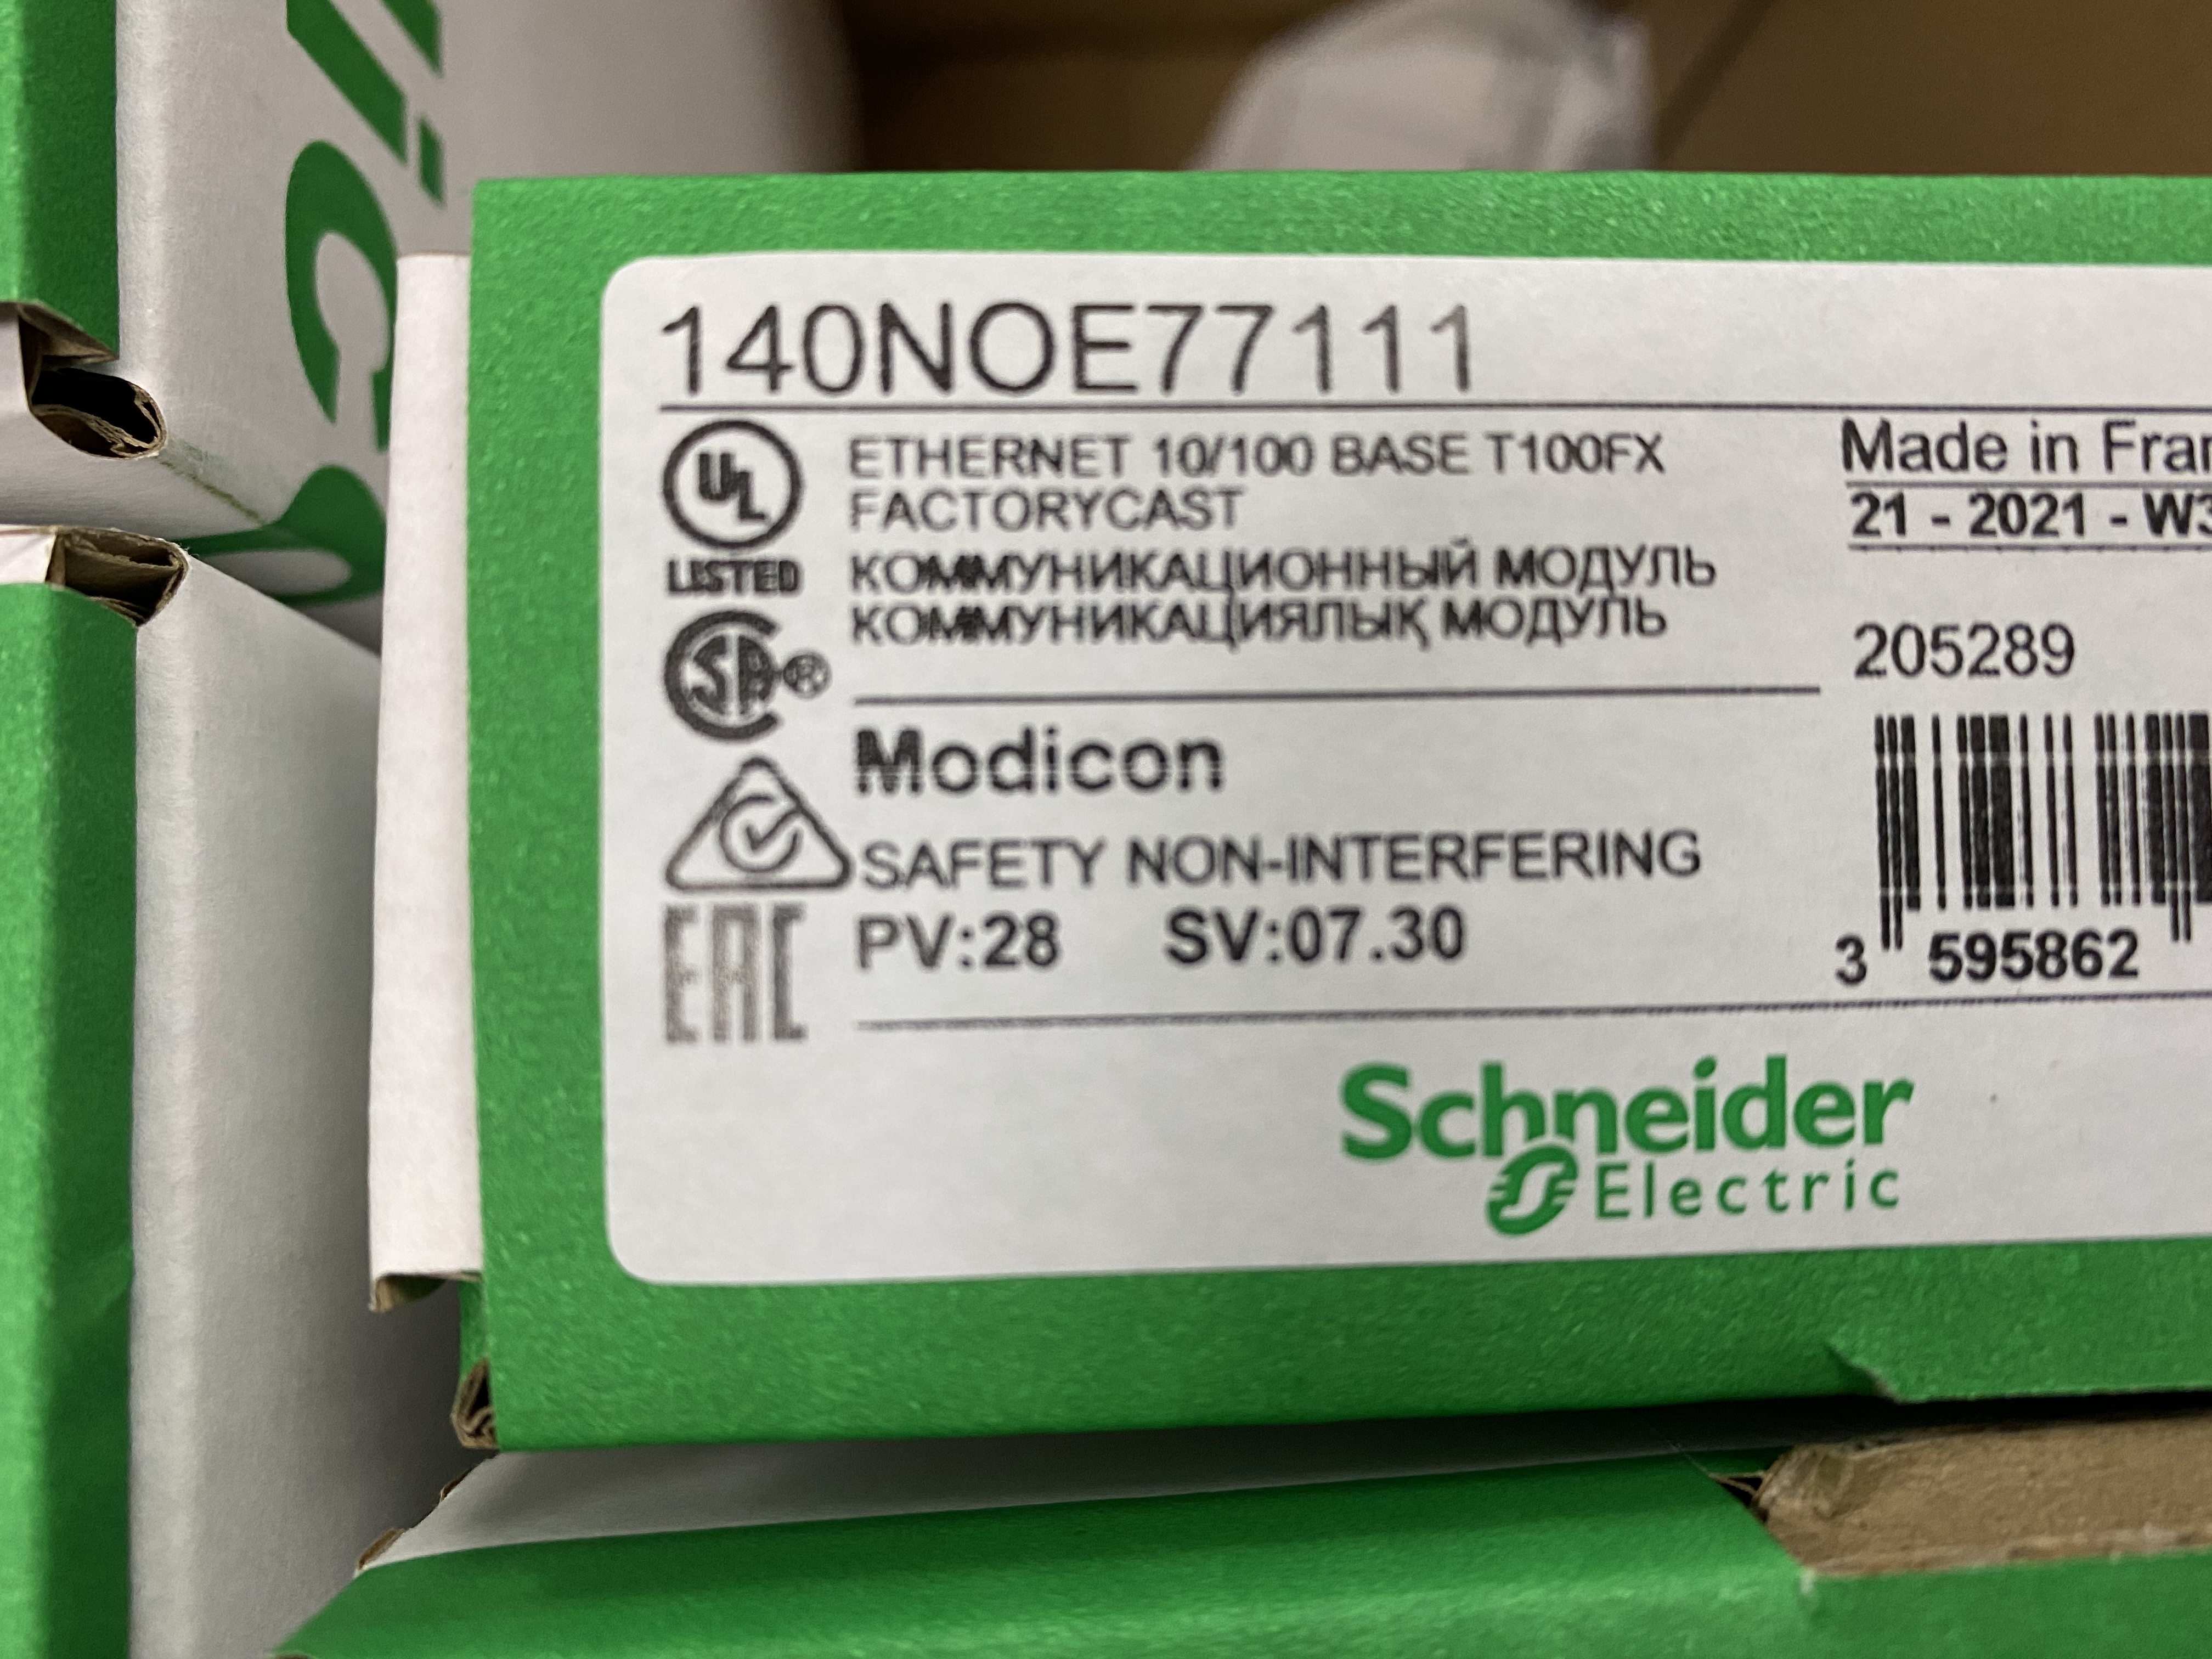 Schneider 140NOE77111